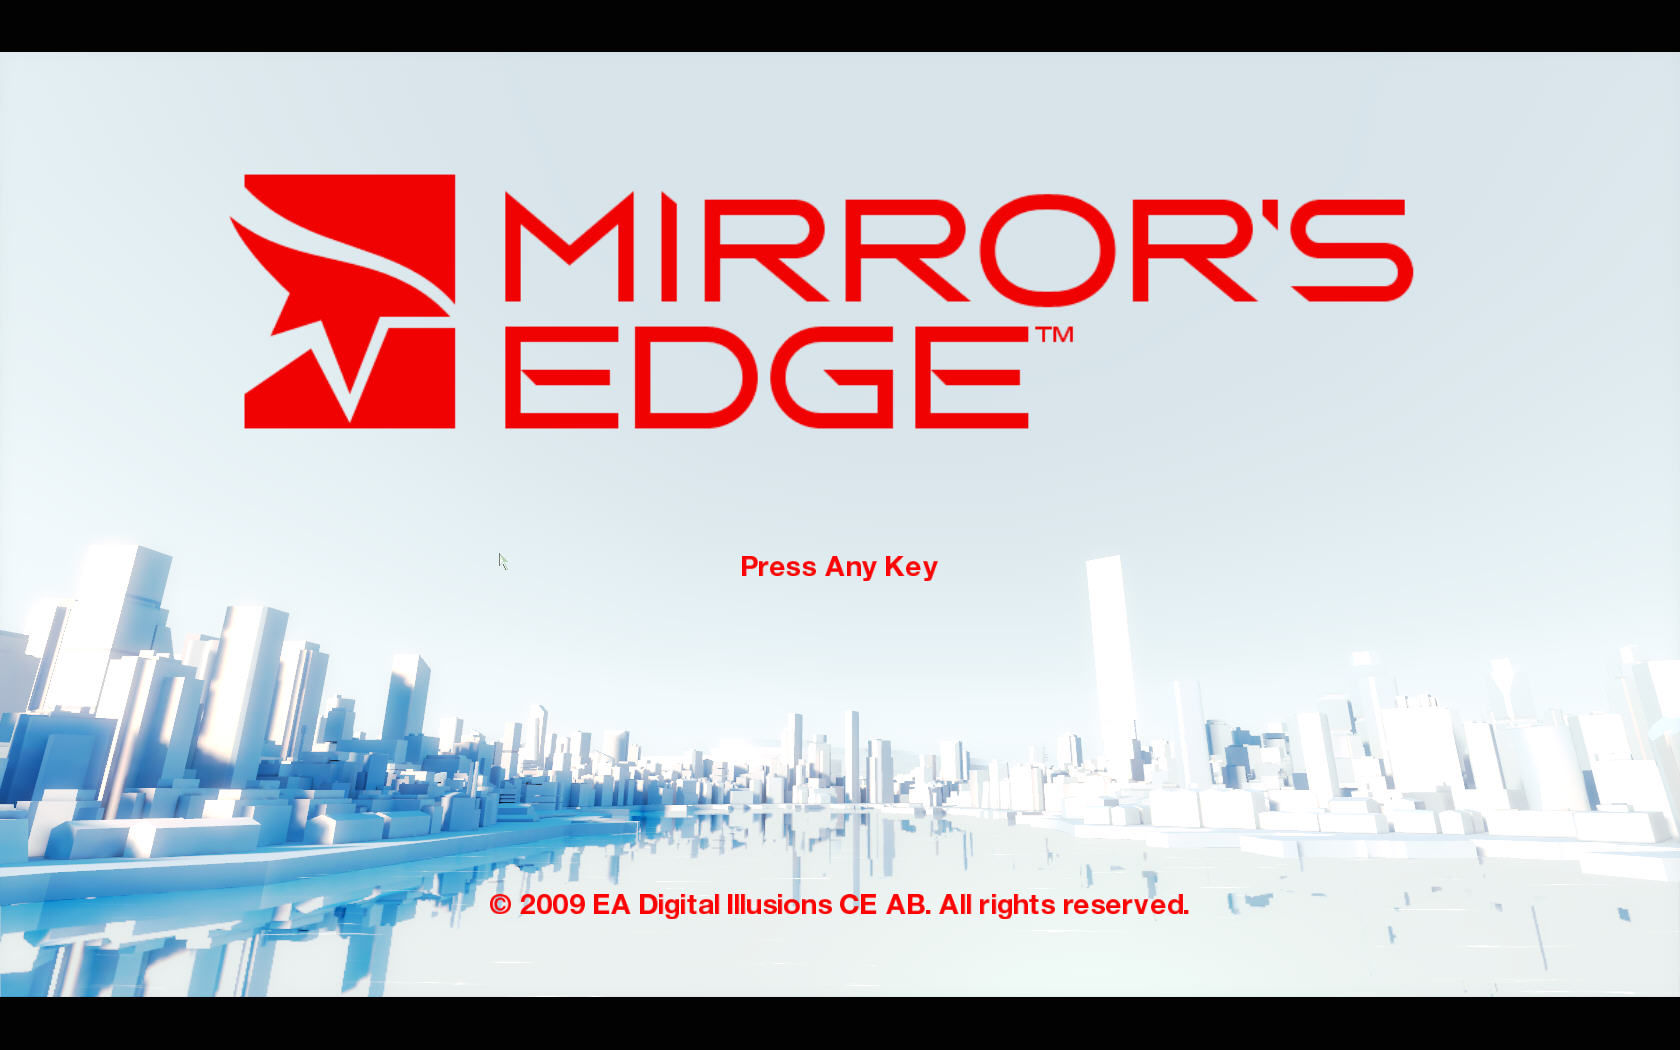 Mirror's Edge main menu photo.